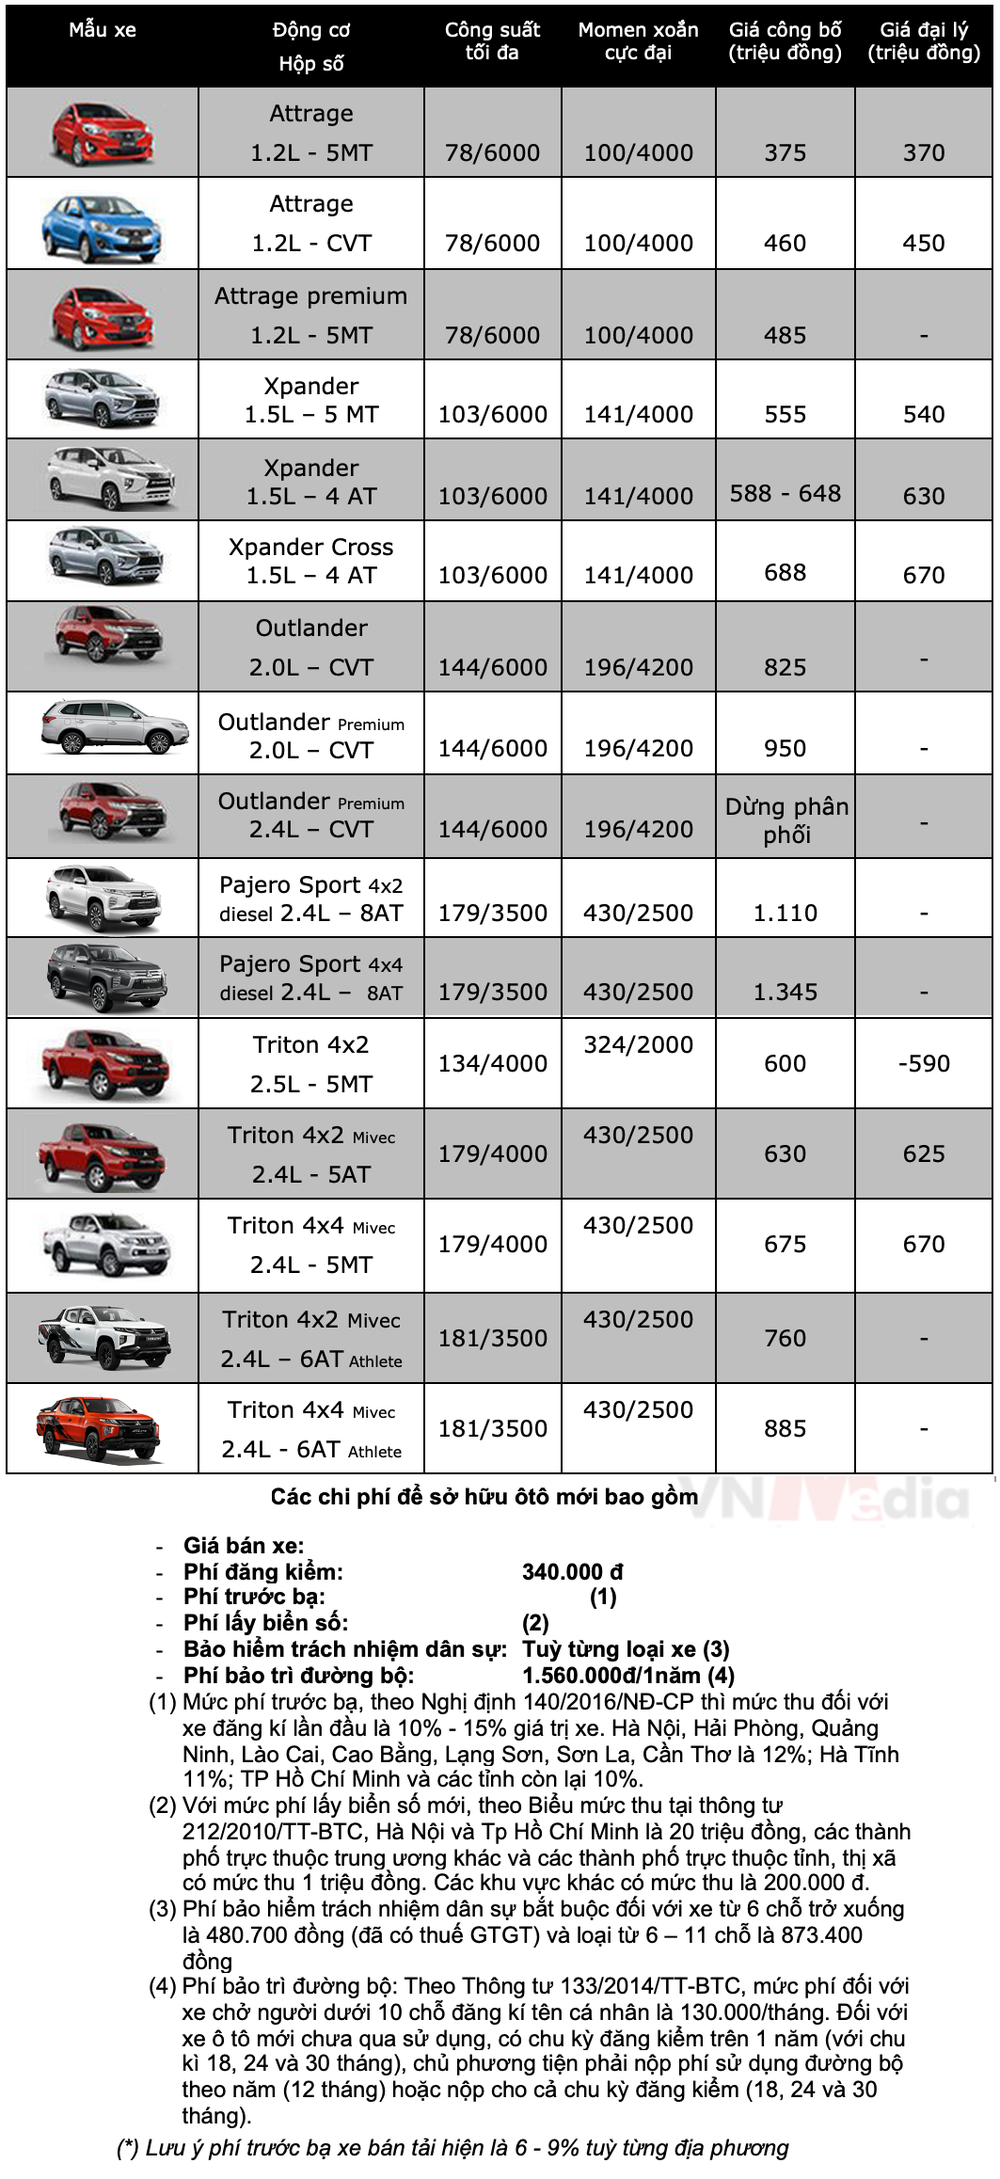 Bảng giá xe Mitsubishi tháng 4: Mitsubishi Attrage được ưu đãi 50% lệ phí trước bạ - Ảnh 2.